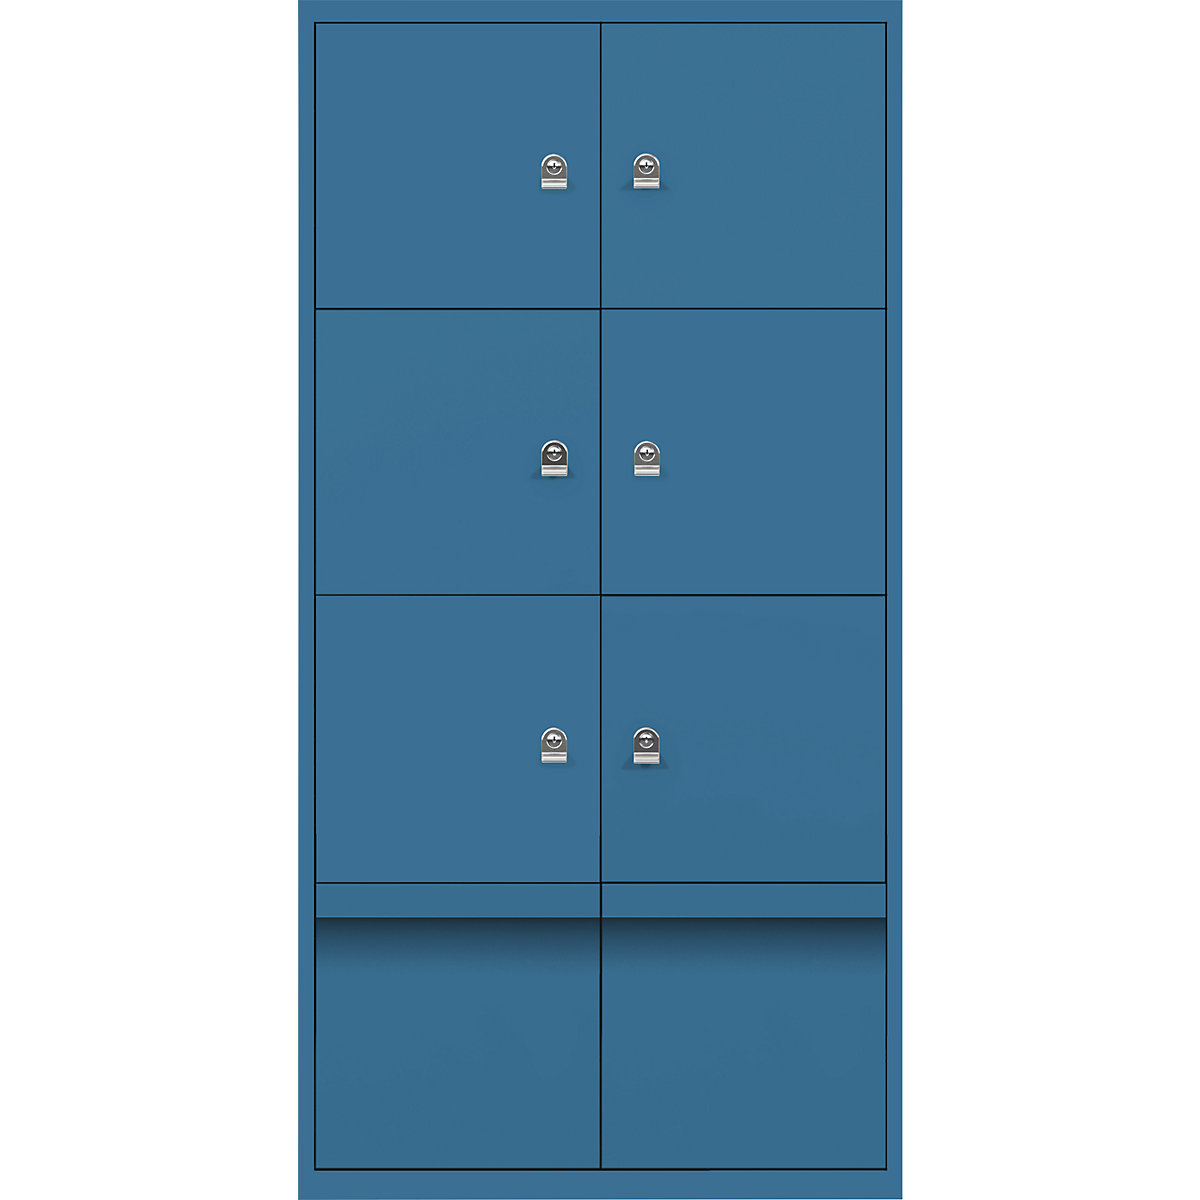 Omara s predelki z zaklepanjem LateralFile™ – BISLEY, 6 predelkov z zaklepanjem in 2 predala, višina po 375 mm, azurno modre barve-21